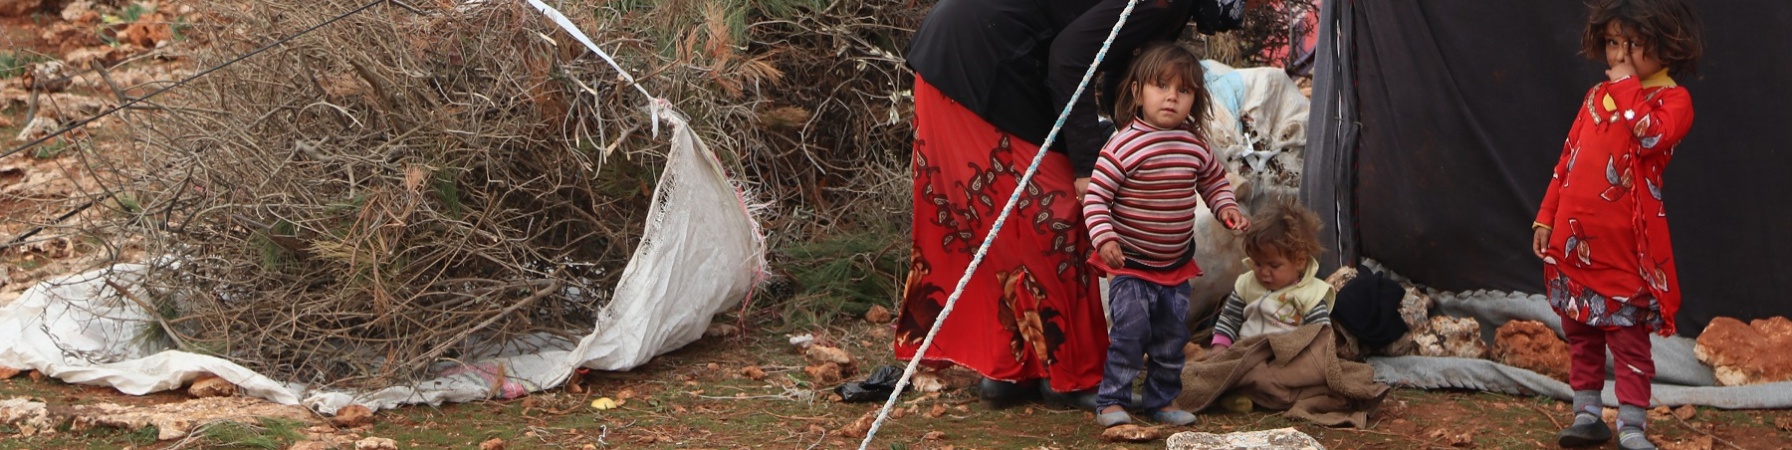 Tre bambini e una donna vicino alla tenda di un campo profughi.